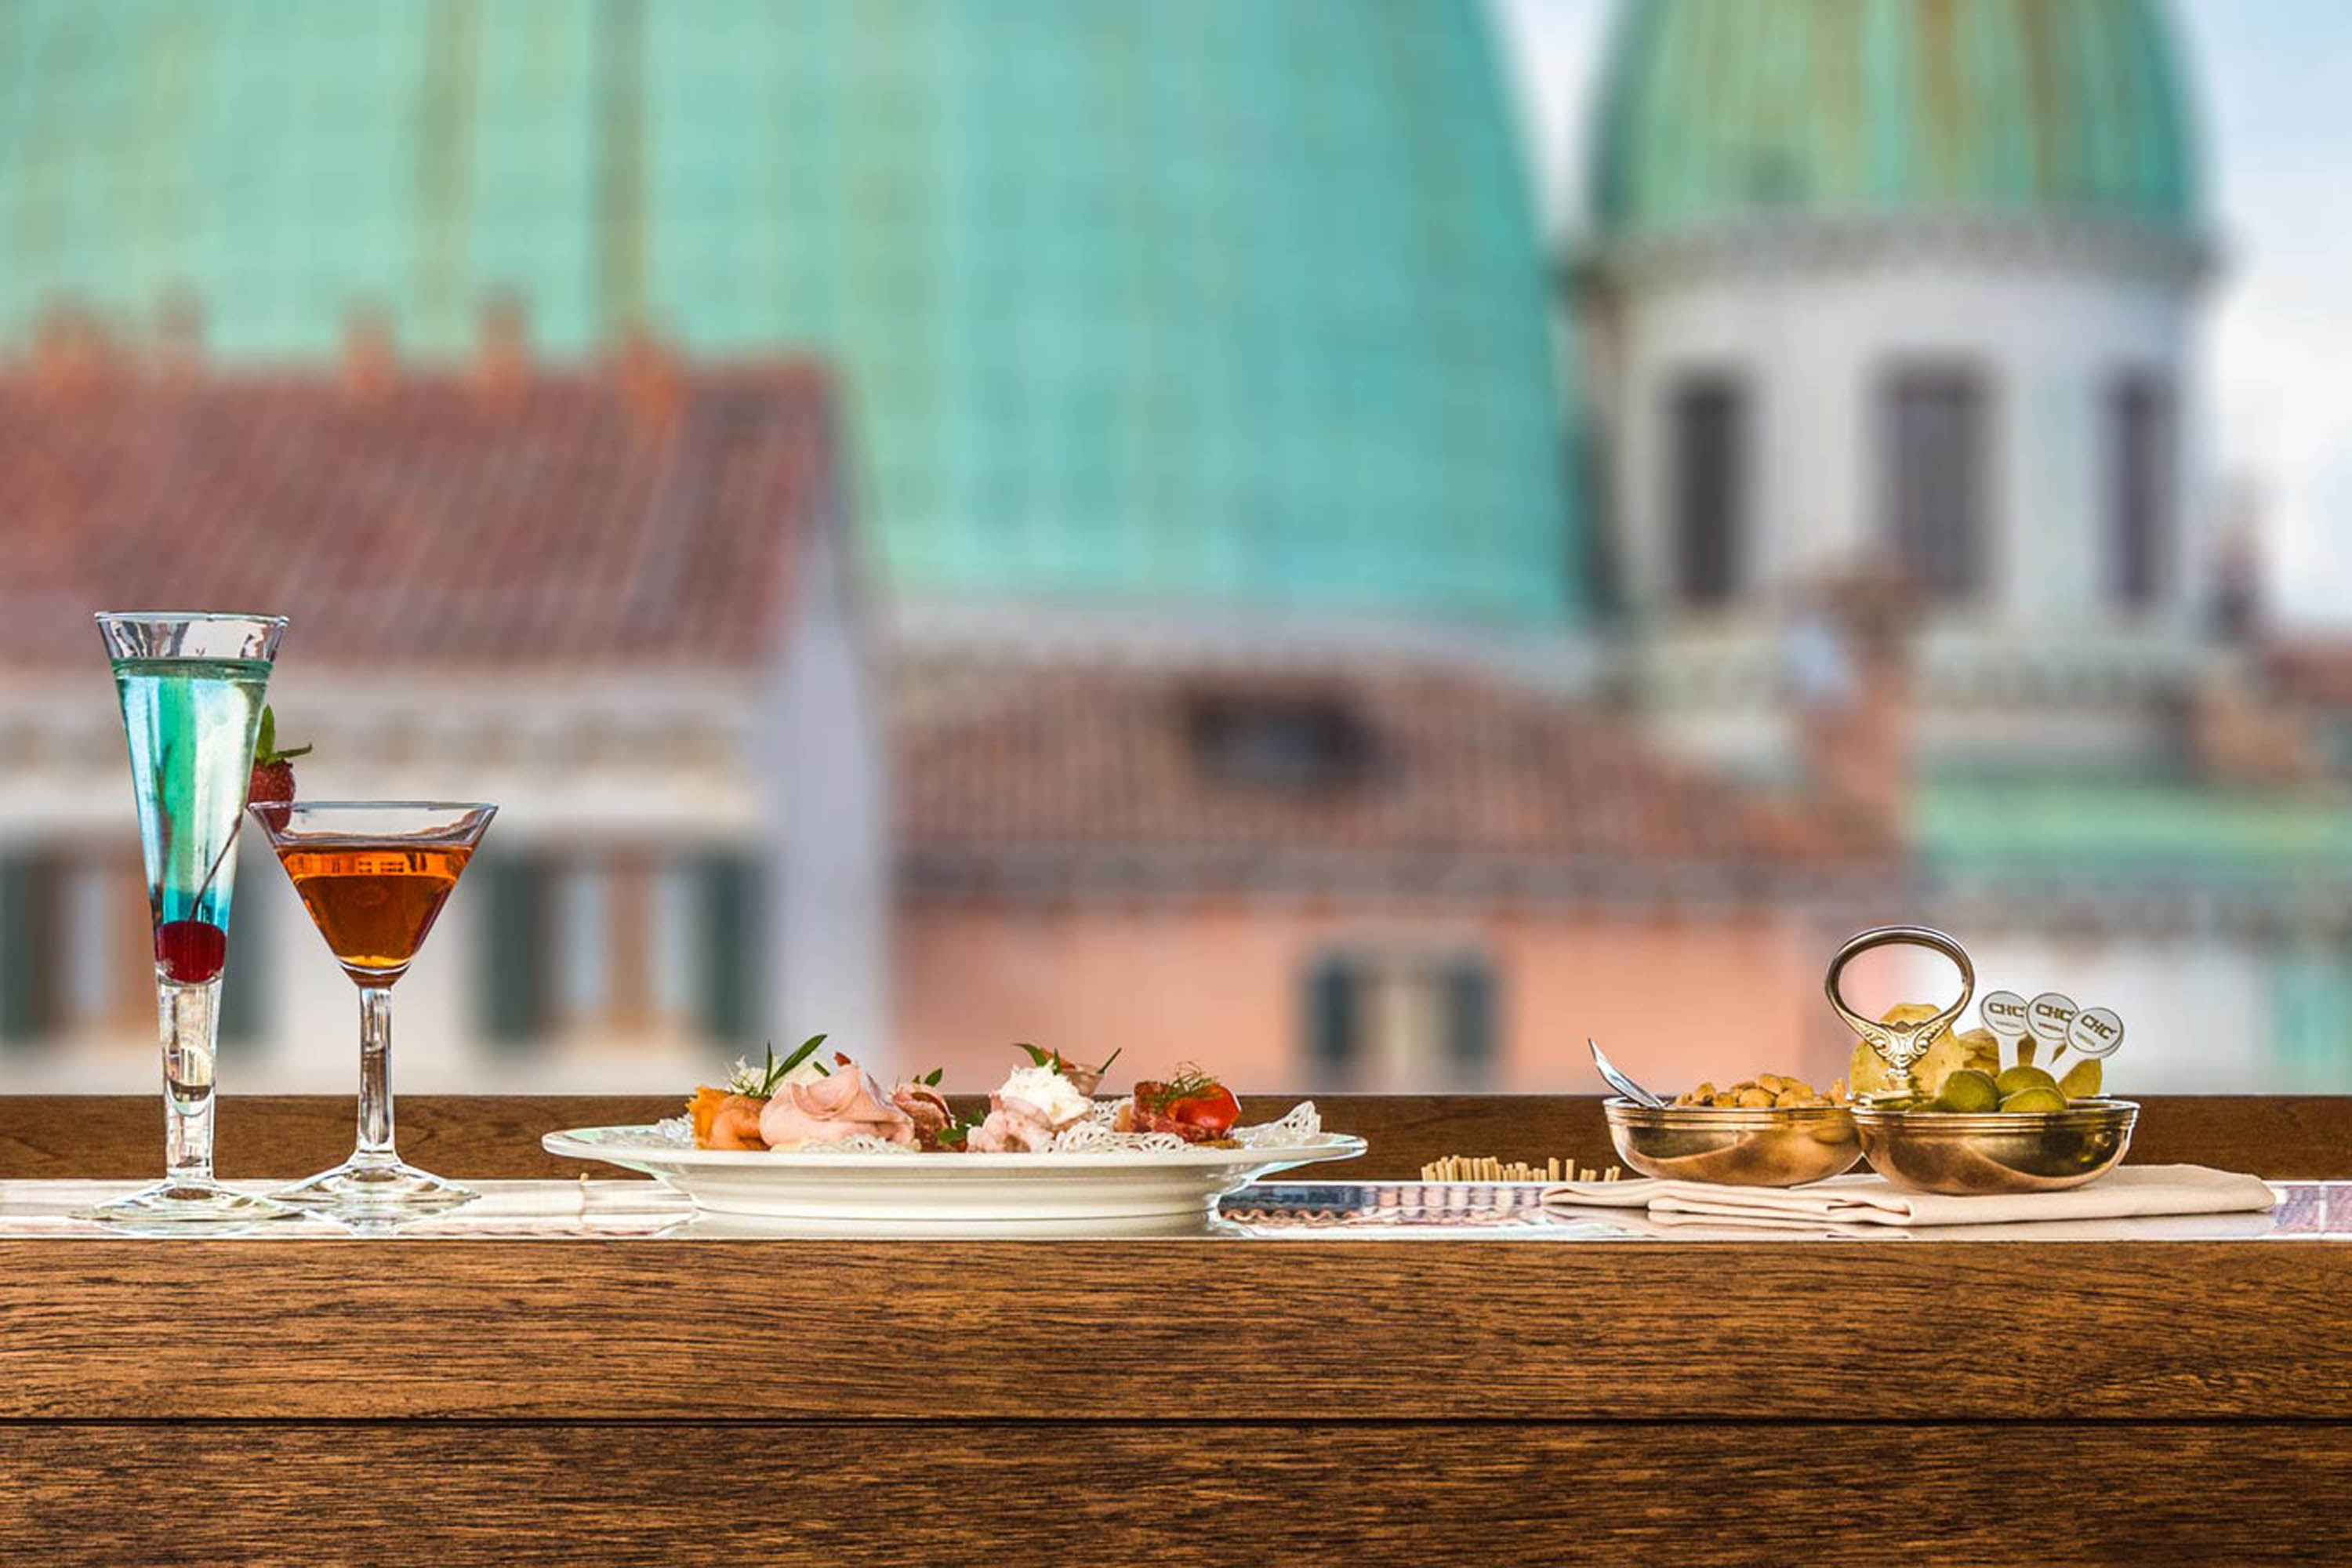 Fotografo Ristoranti a venezia con bella vista panoramica aperitivo in terrazza